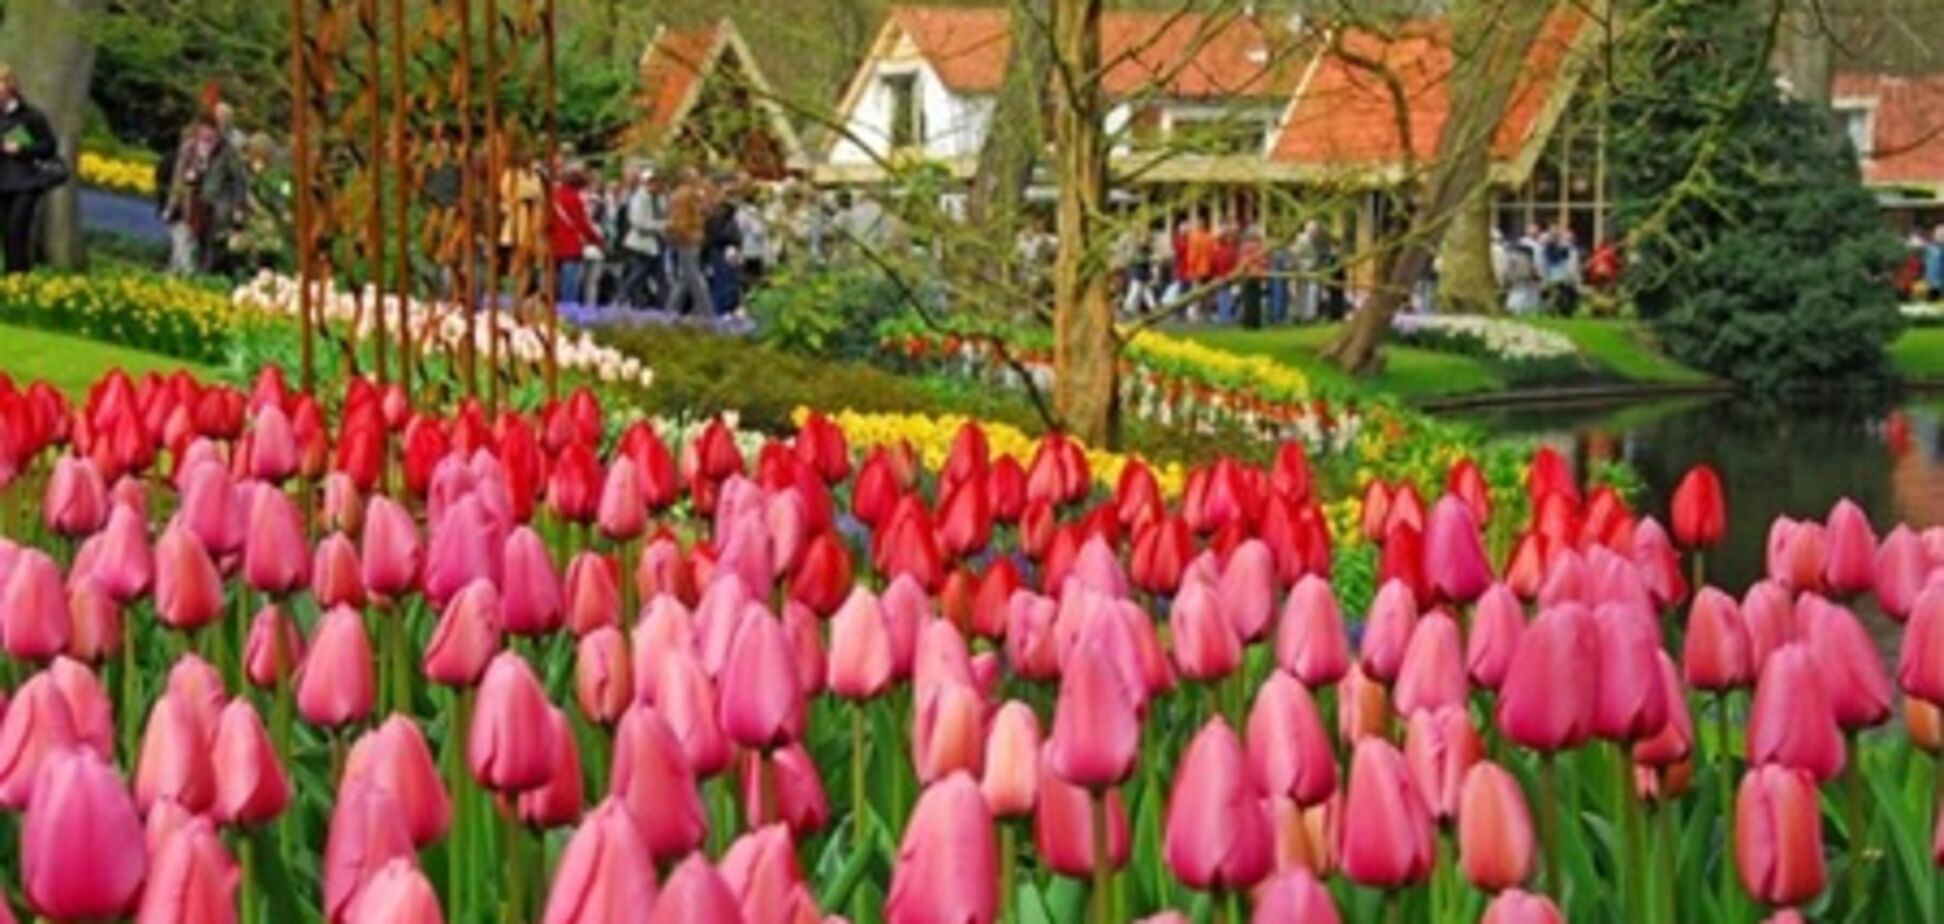 В Голландии предлагают цветочный автобусный тур